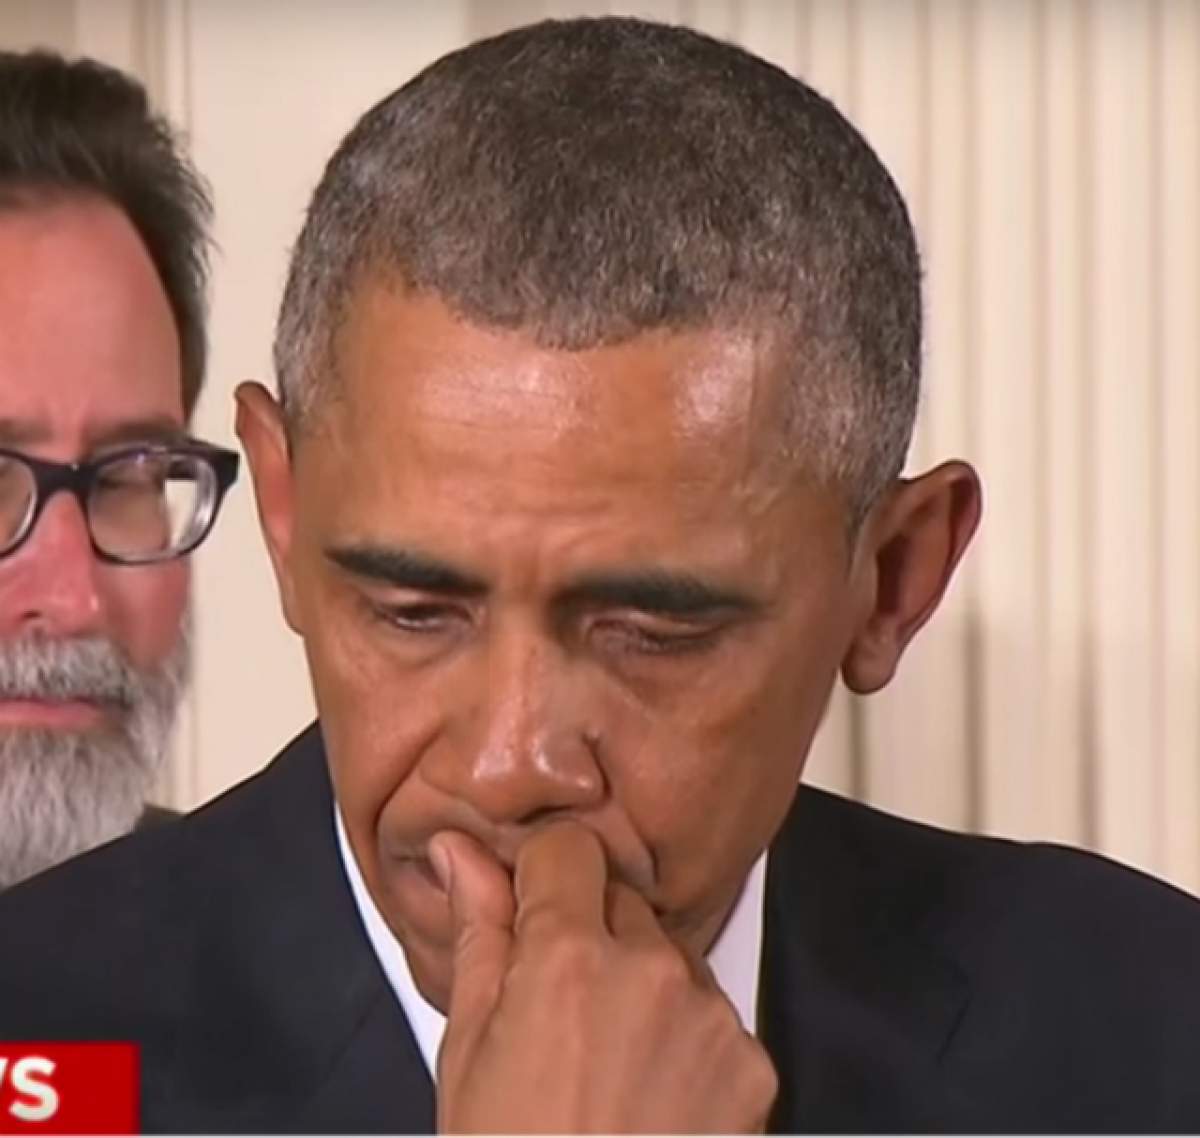 Video / Barack Obama, mesajul care l-a adus în lacrimi. Americanii suspină